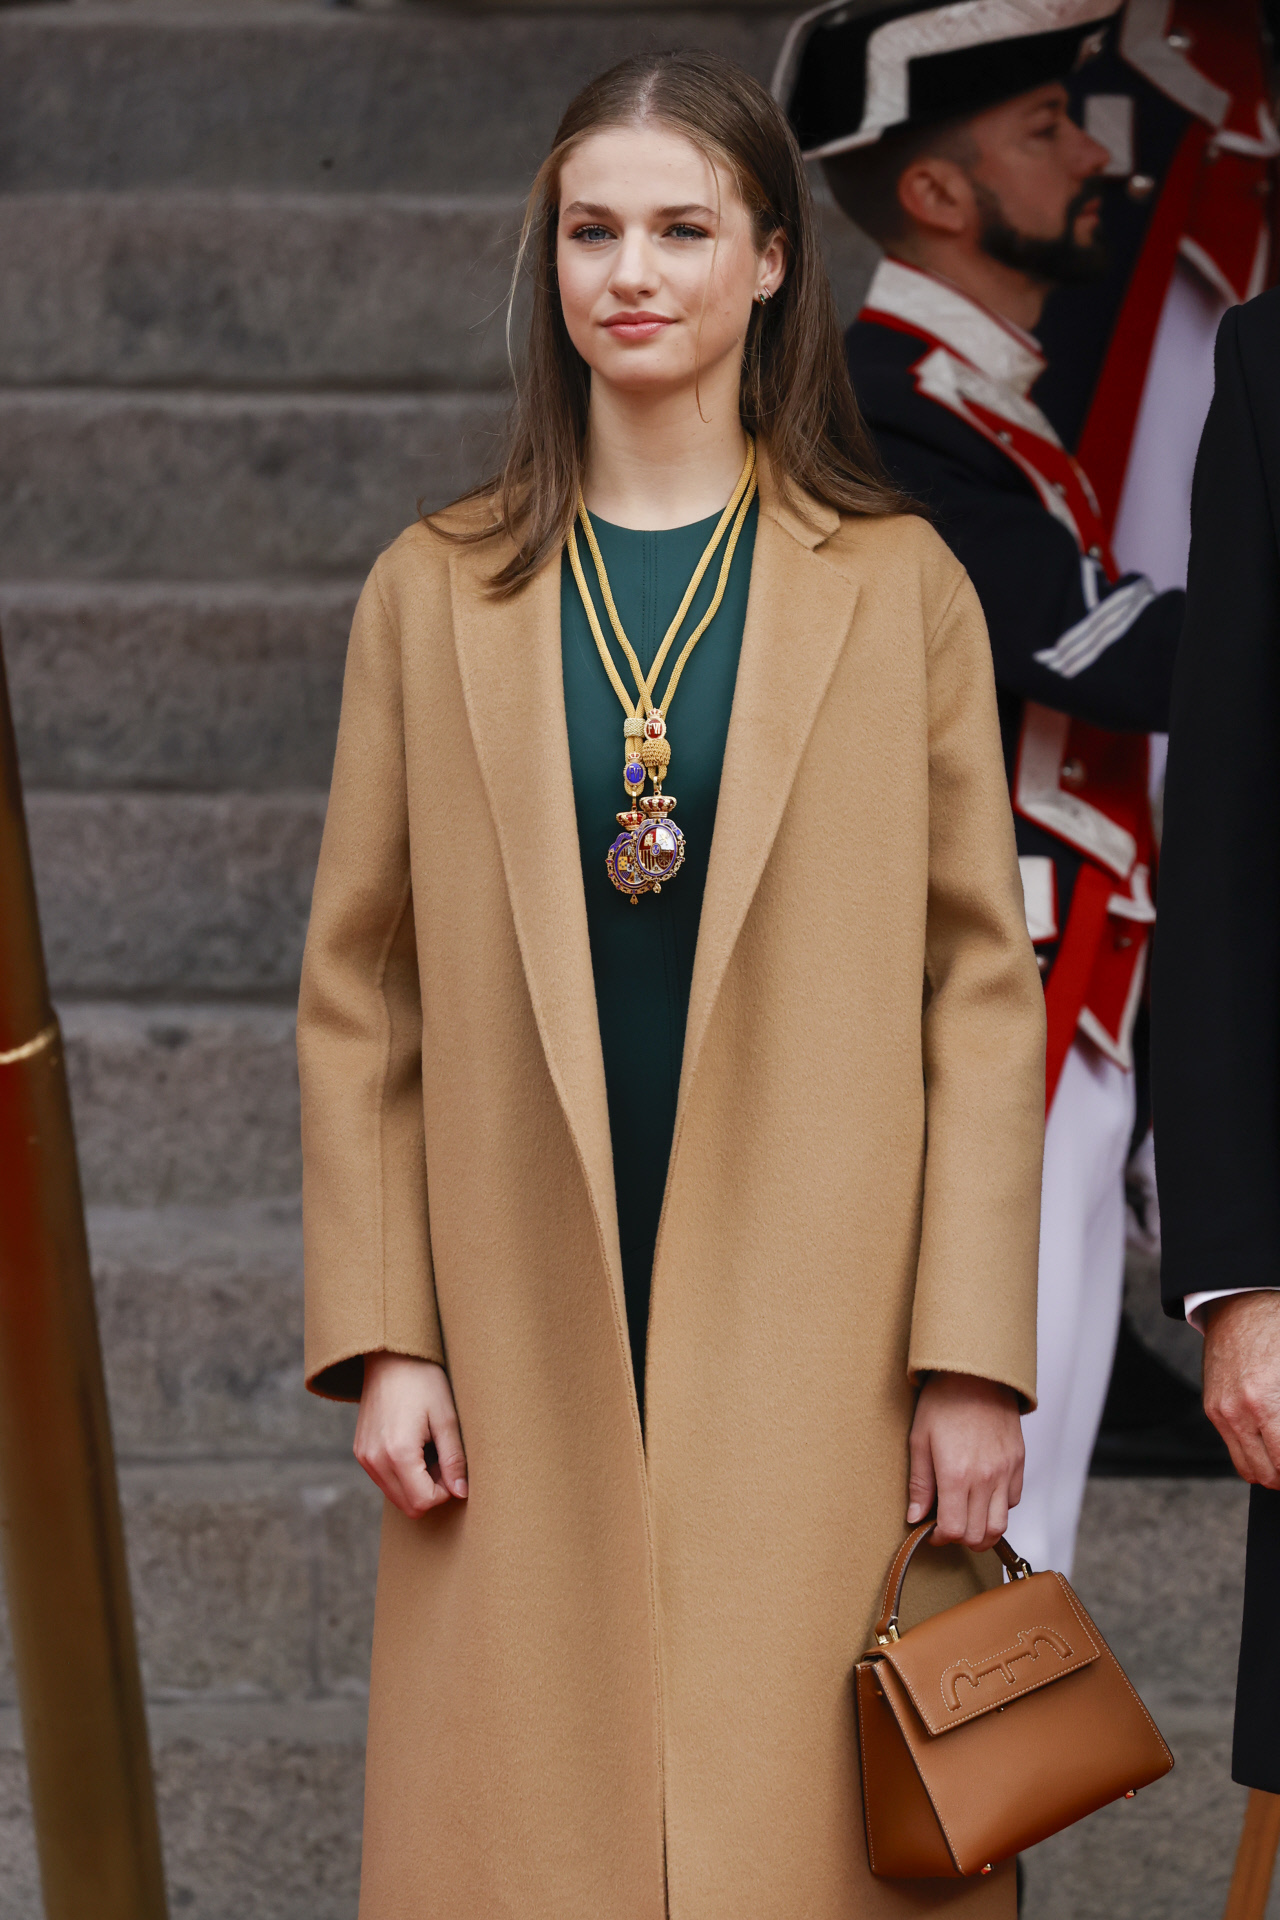 Leonor a su entrada en el Congreso, con abrigo camel.